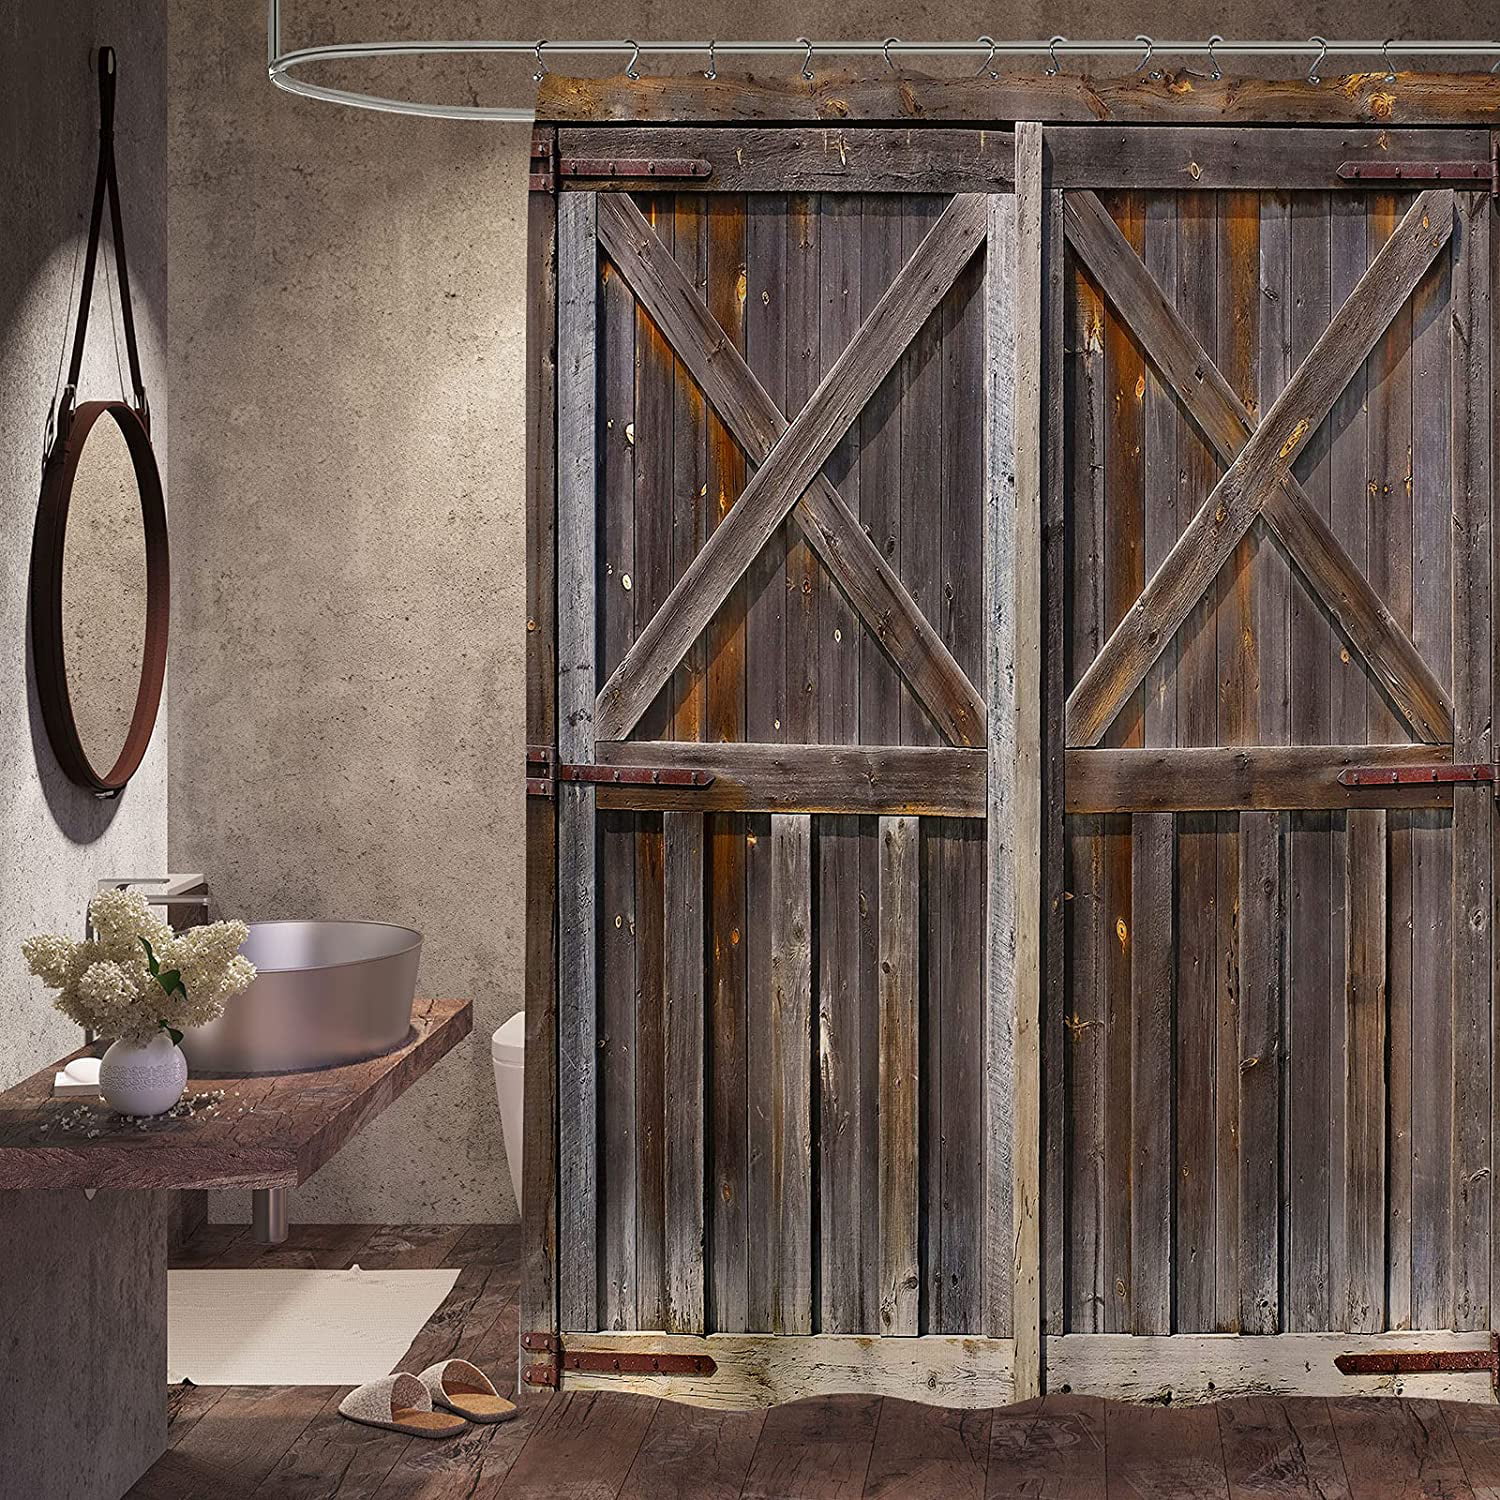 Wooden Barn Door Garage Door Rustic Shower Curtain Old Barn Door Shower Curtain 